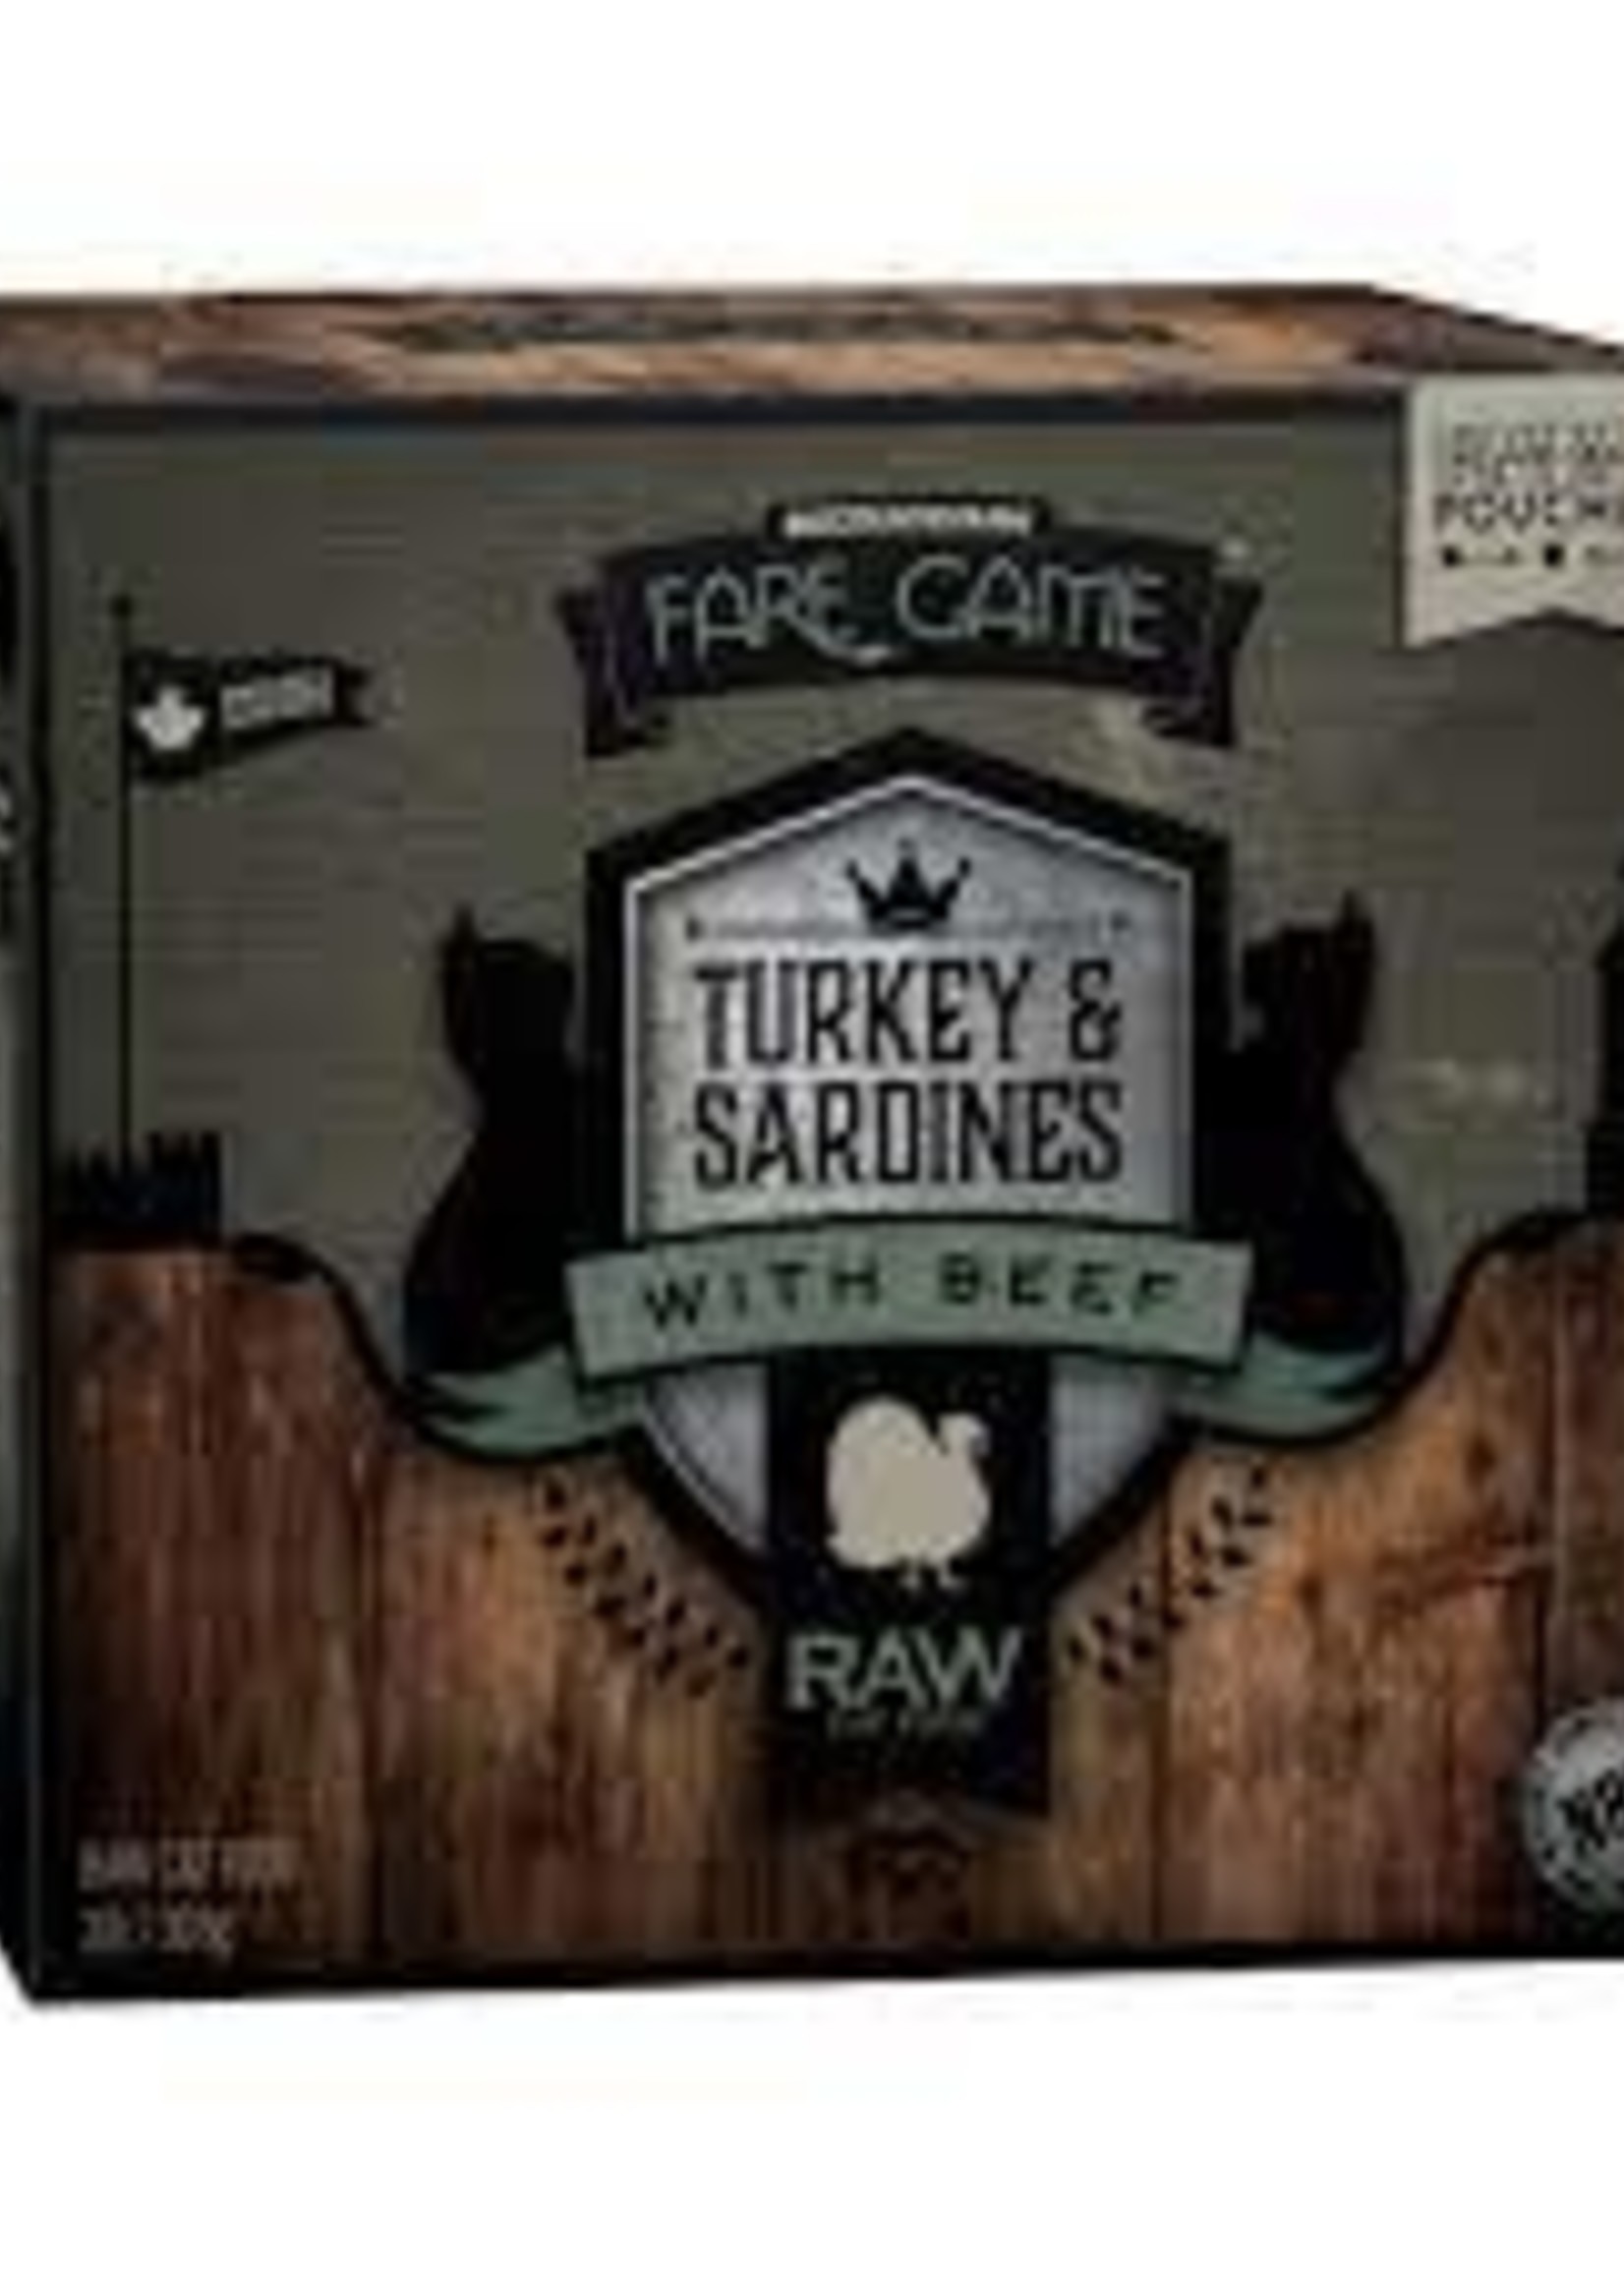 BCR Fare Game - Turkey/Sardine/Beef 2lb